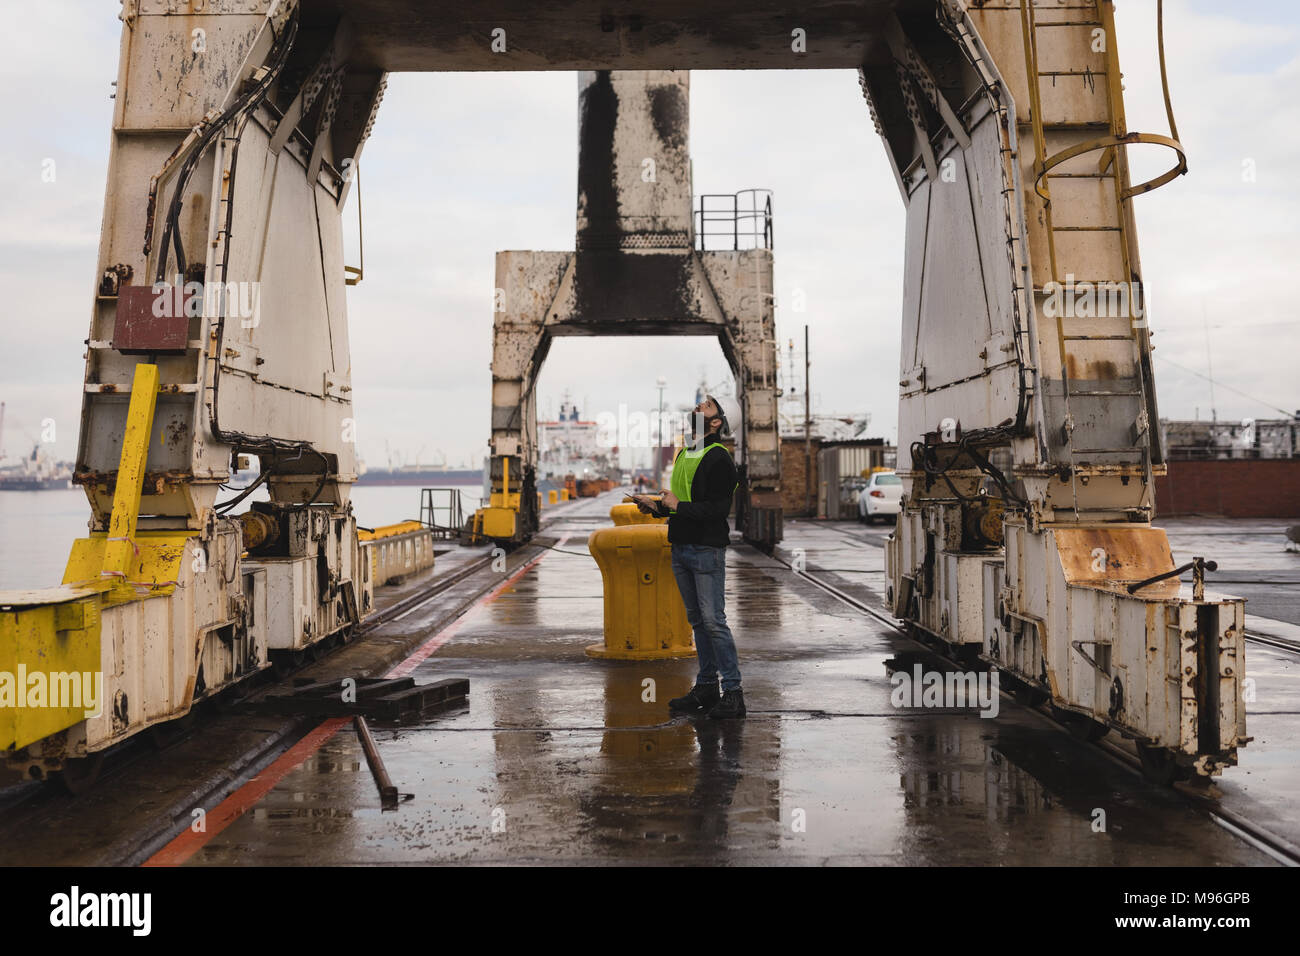 Dock worker inspecting the huge cranes Stock Photo